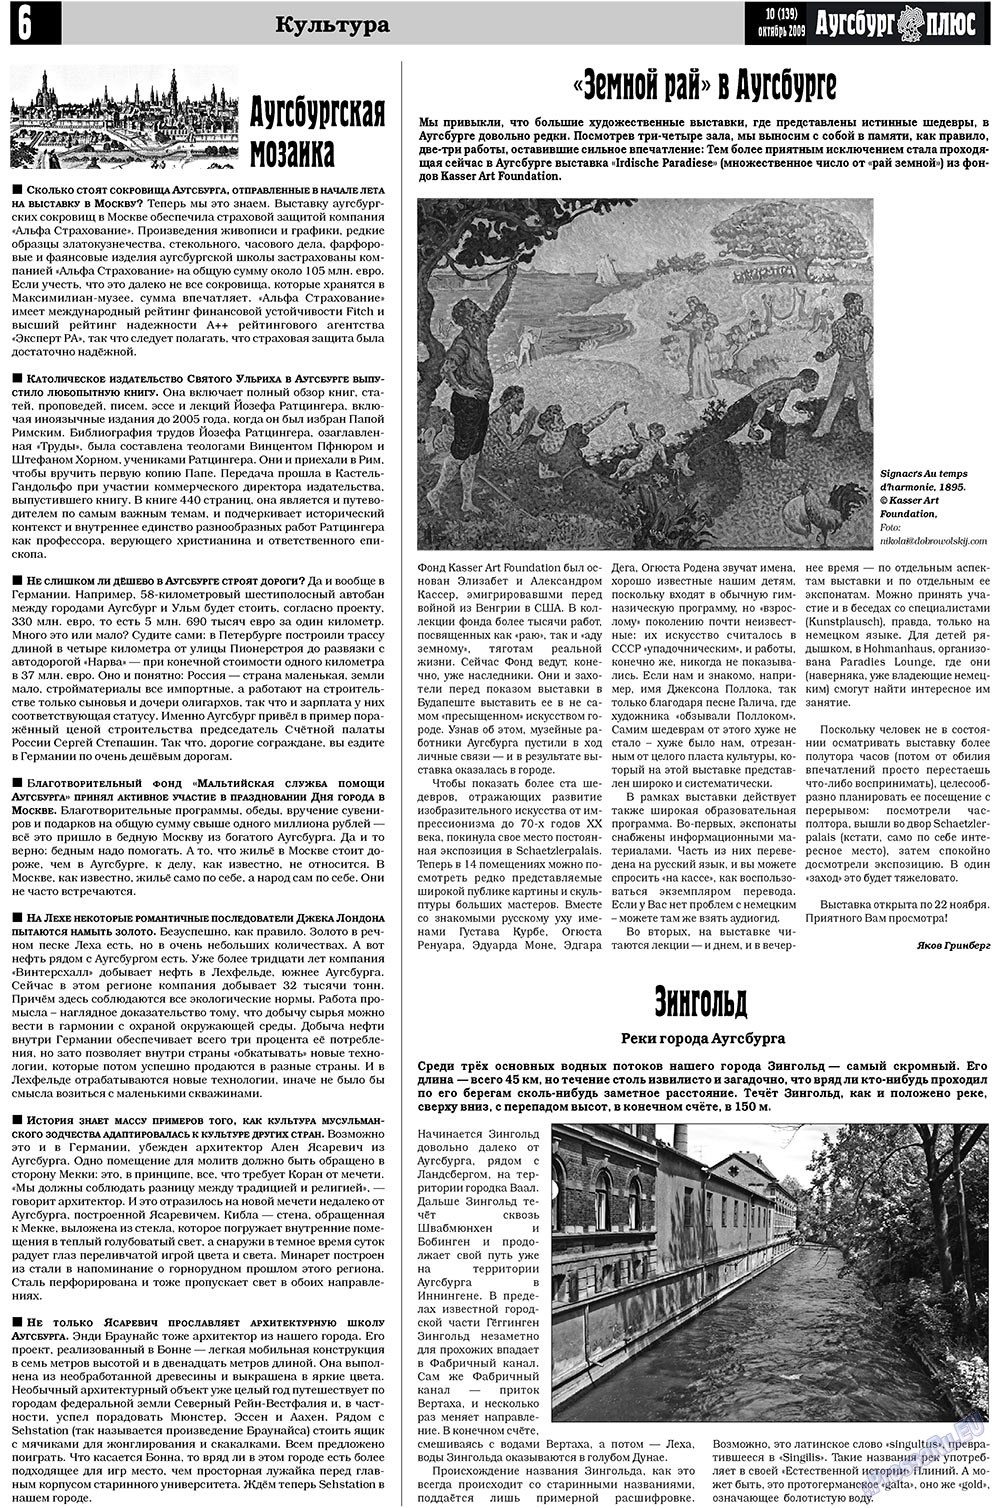 Германия плюс (газета). 2009 год, номер 10, стр. 22